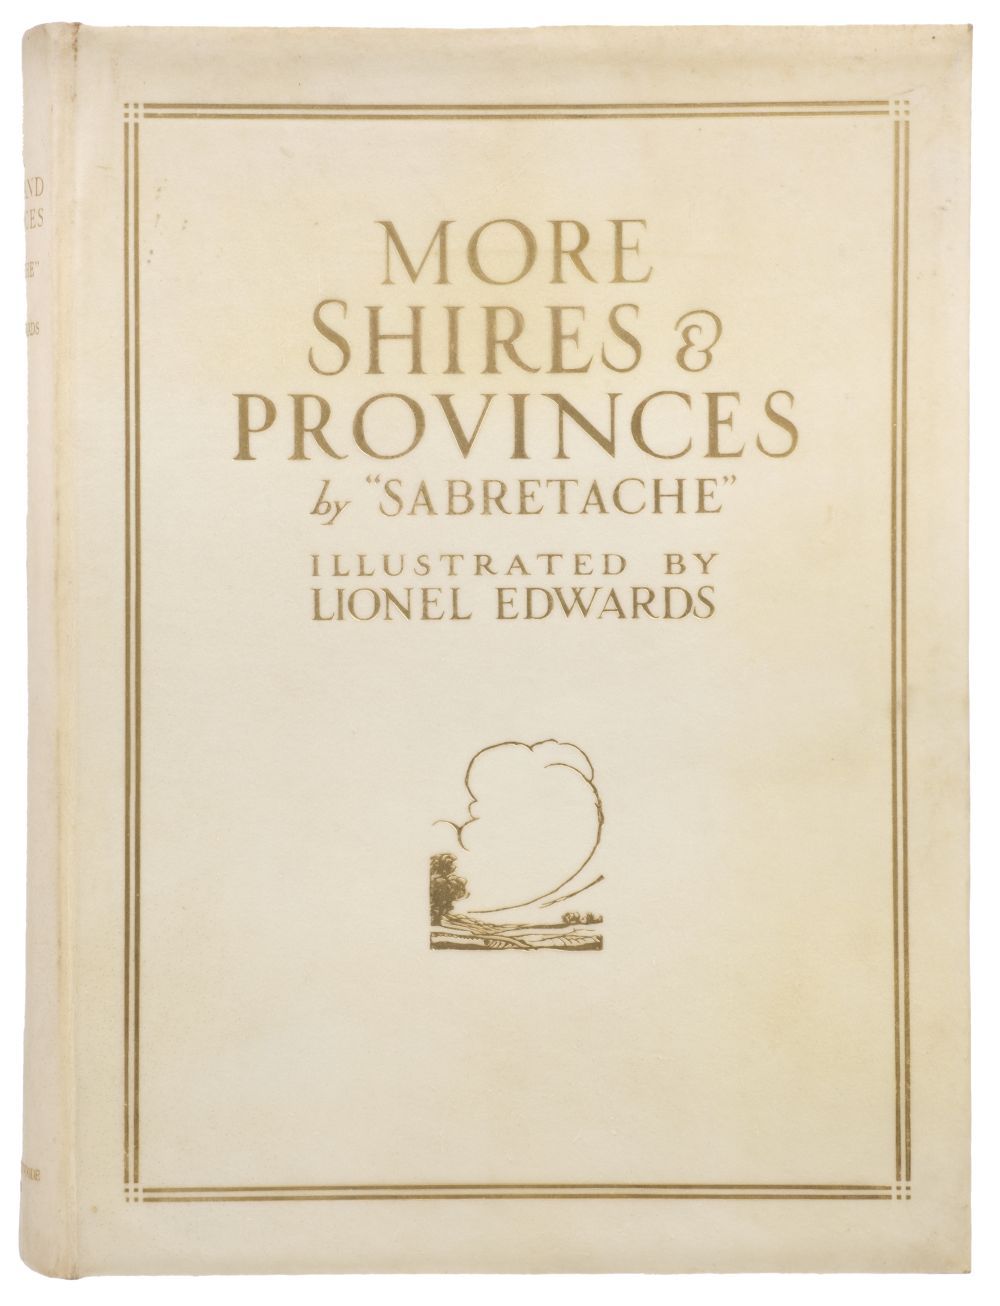 Edwards (Lionel, illustrator). "More Shires & Provinces", 1928